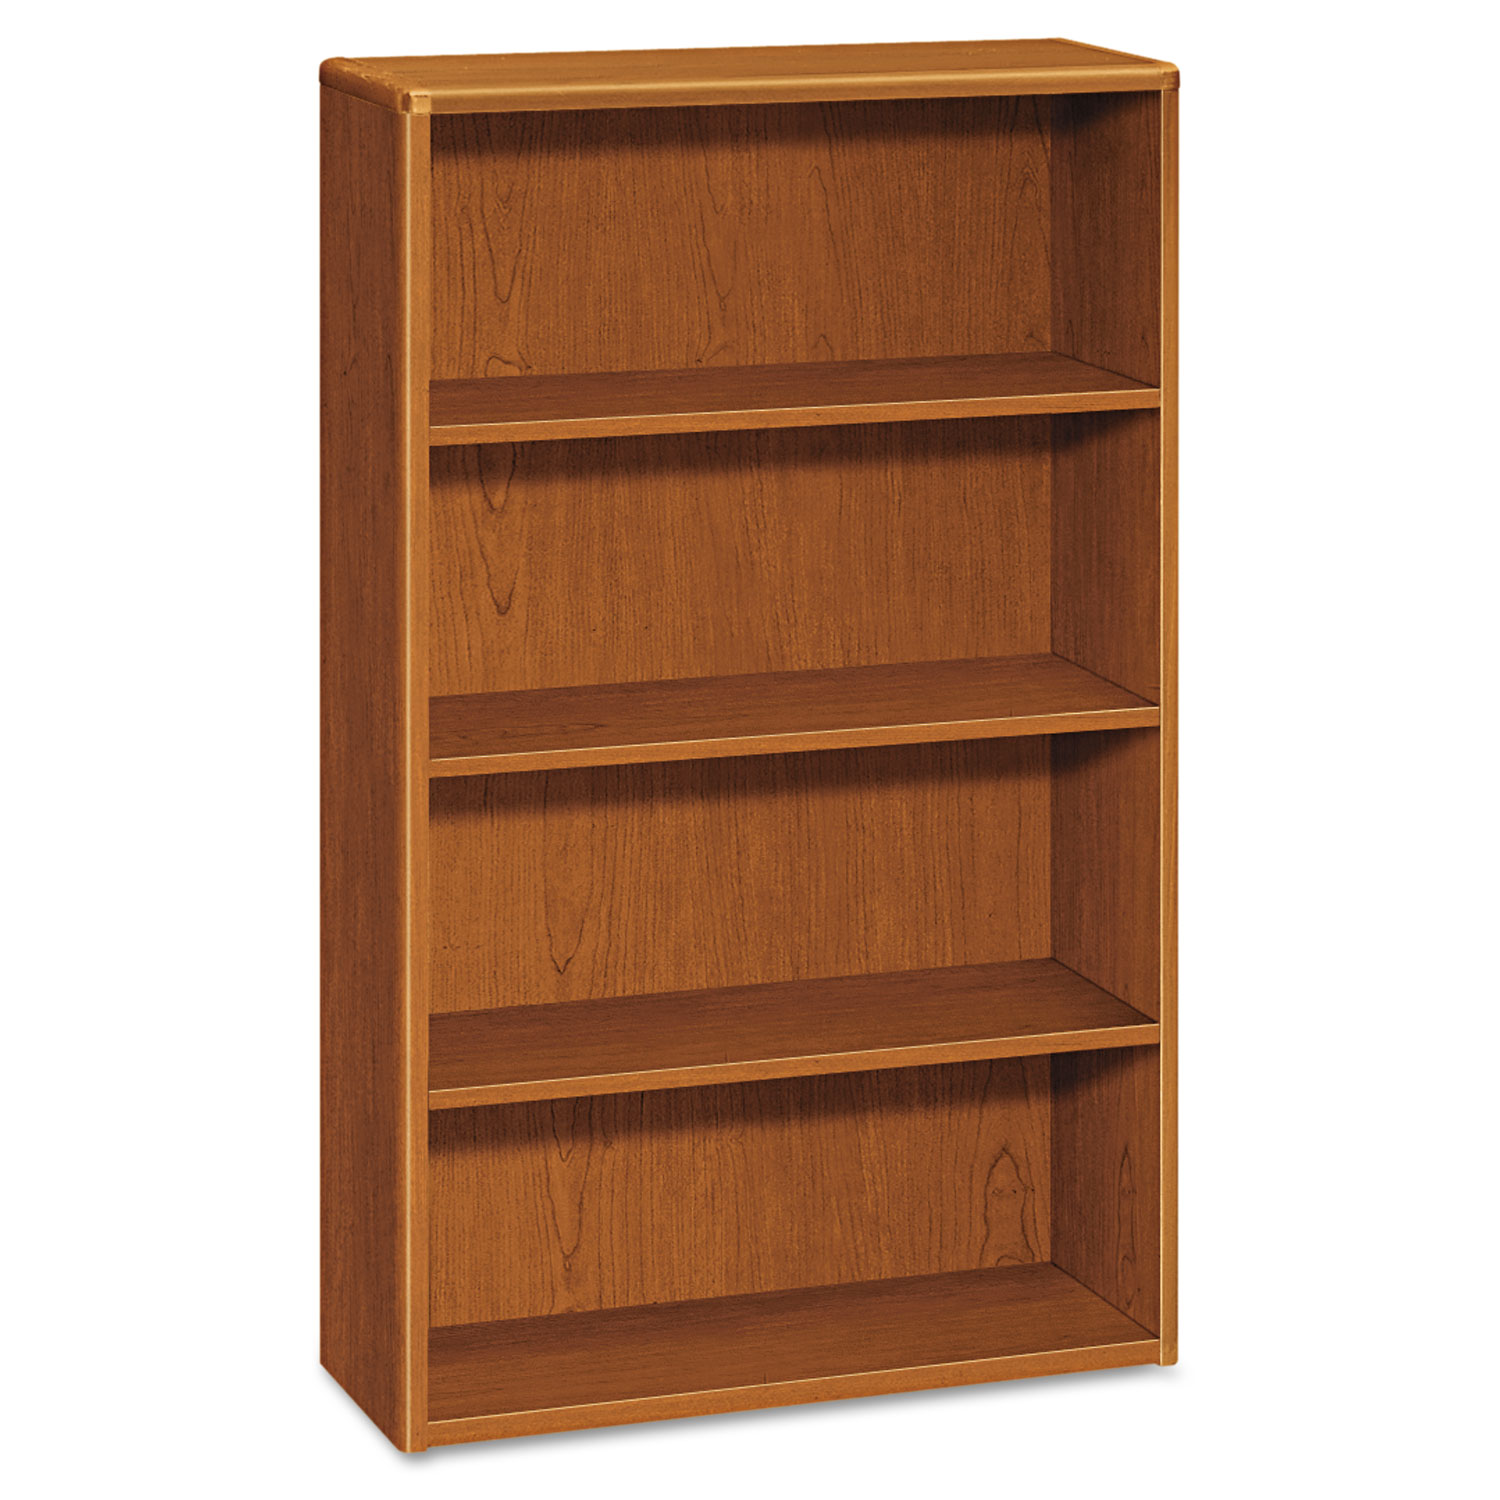  HON H10754.HH 10700 Series Wood Bookcase, Four Shelf, 36w x 13 1/8d x 57 1/8h, Bourbon Cherry (HON10754HH) 